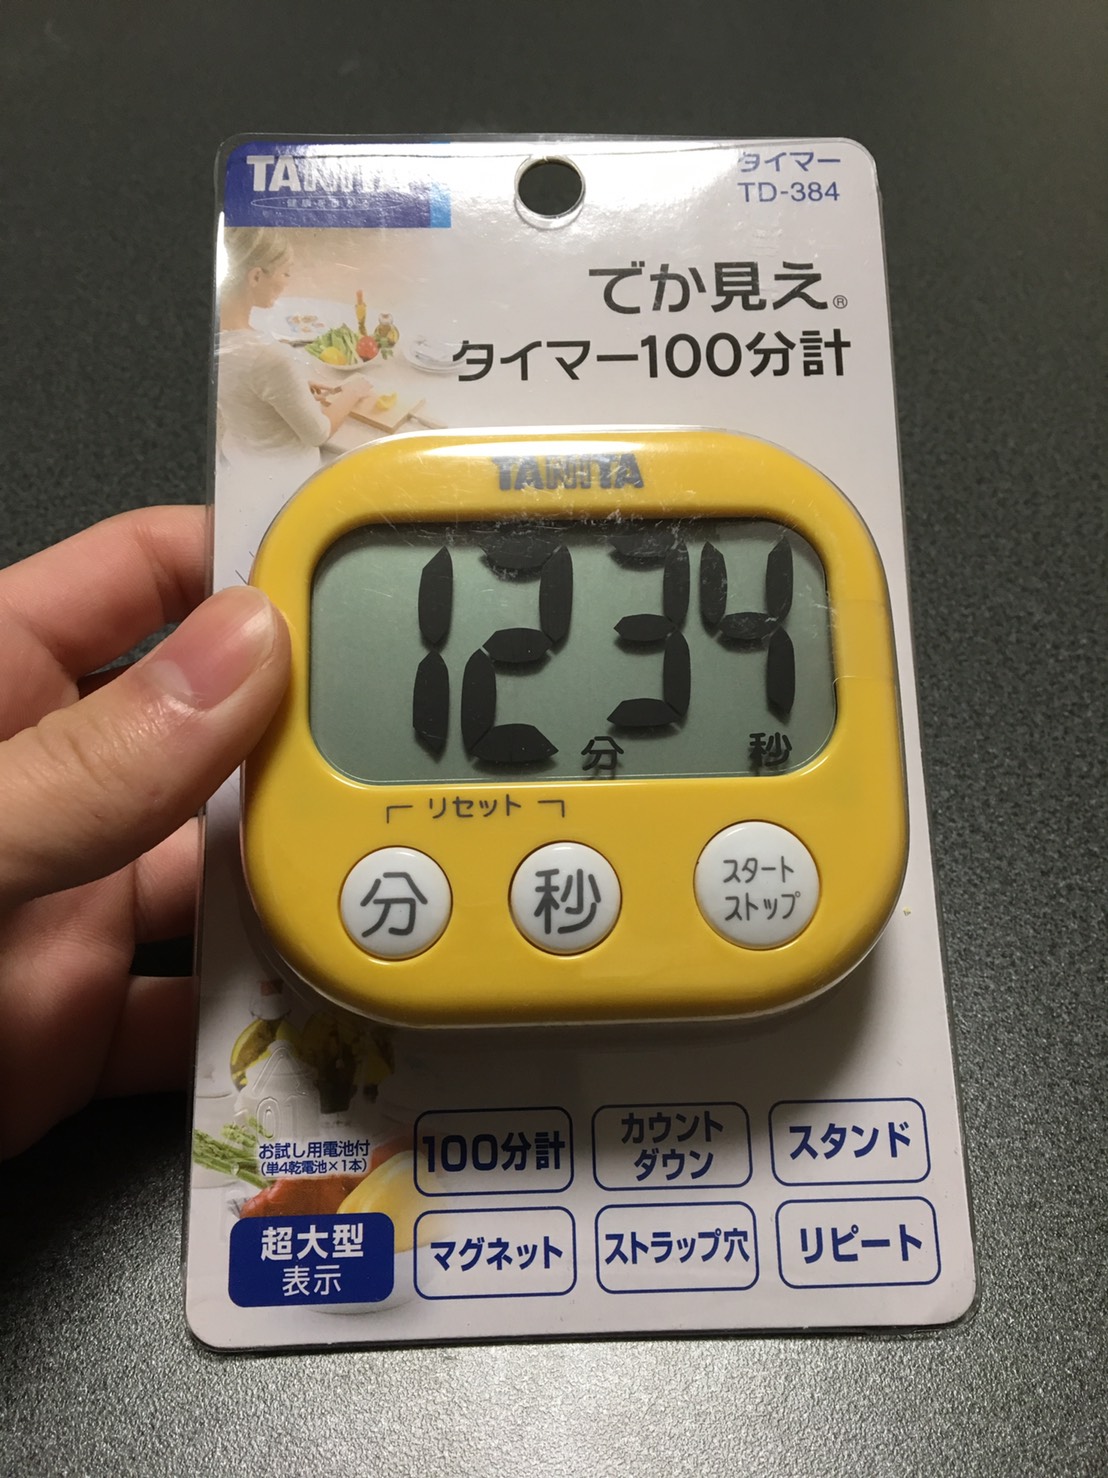 タニタ キッチンタイマー TD-384 3つセット 新品